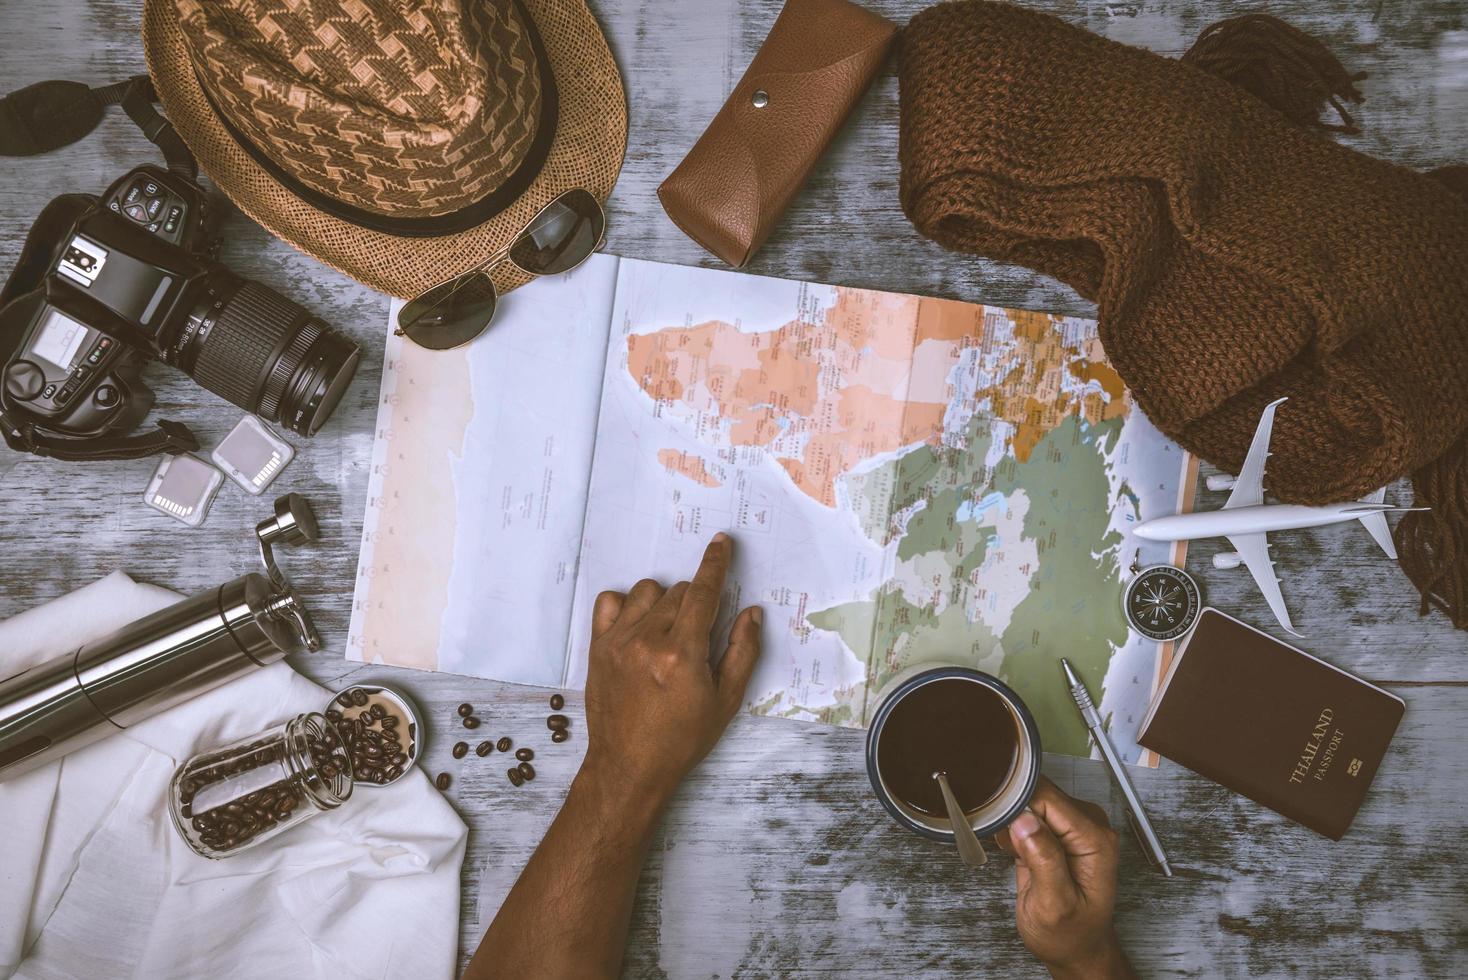 touristische Urlaubsplanung mit Hilfe von Weltkarte und Kompass sowie Kaffeetasse mit Kaffeemühle und weiterem Reisezubehör. Reise vorbereiten. reiseplanungskonzept urlaub mit karte foto